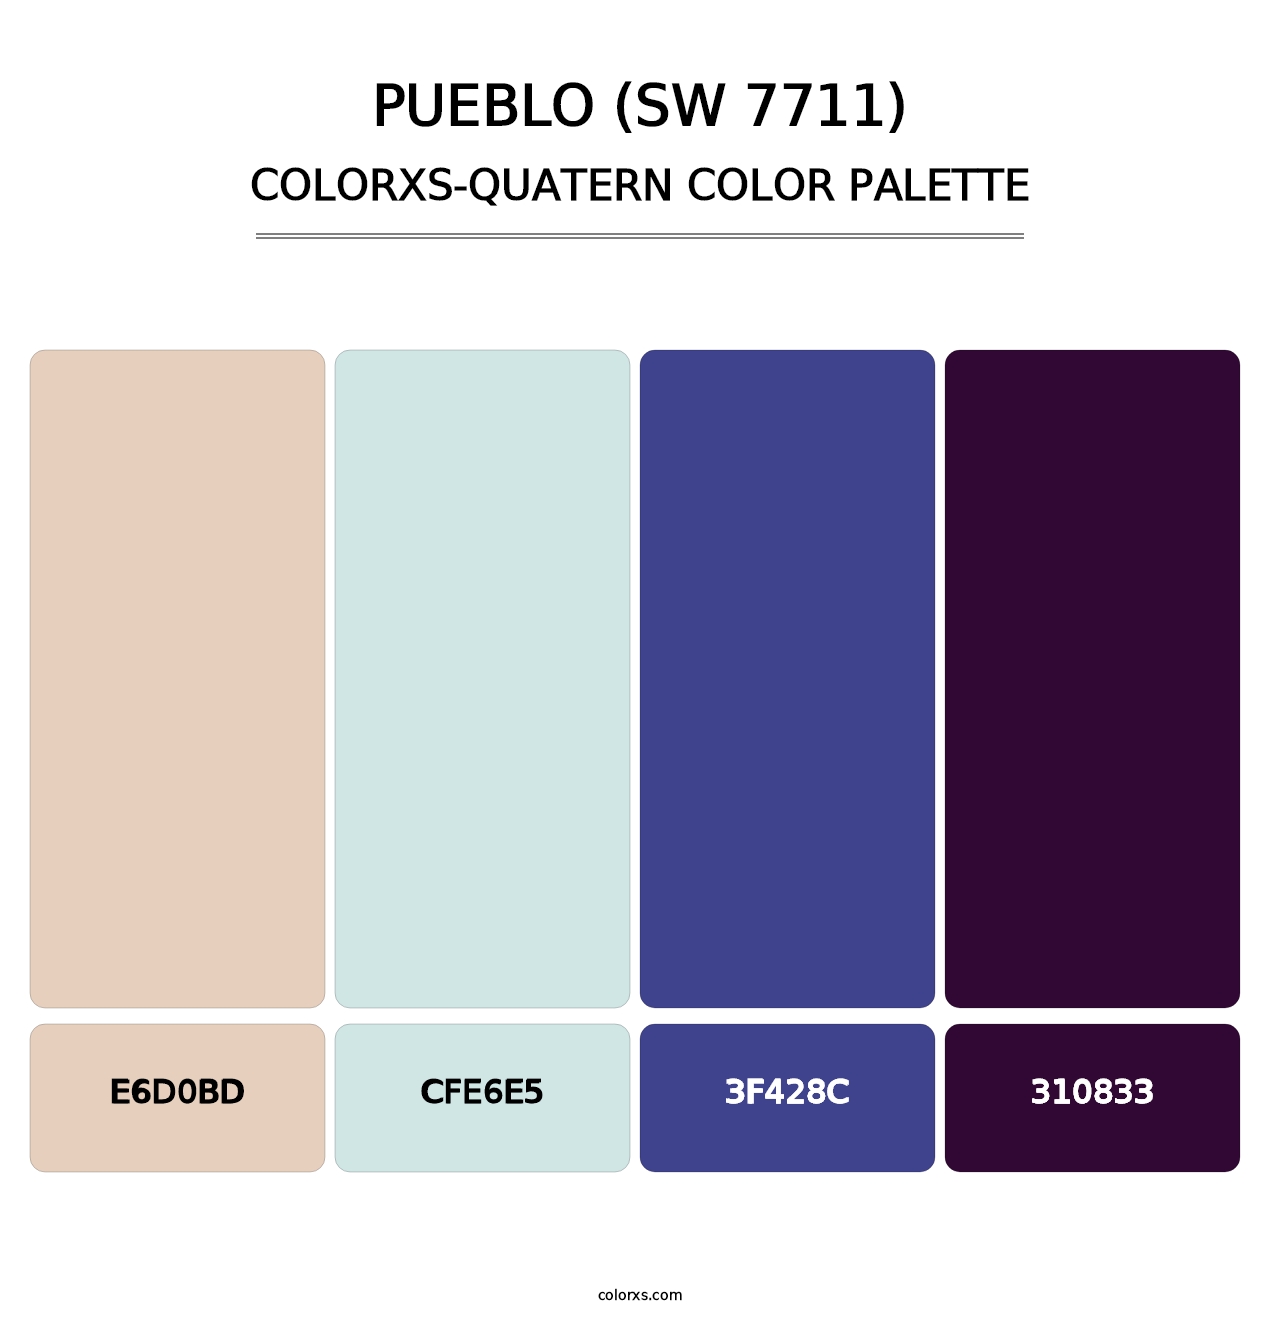 Pueblo (SW 7711) - Colorxs Quatern Palette